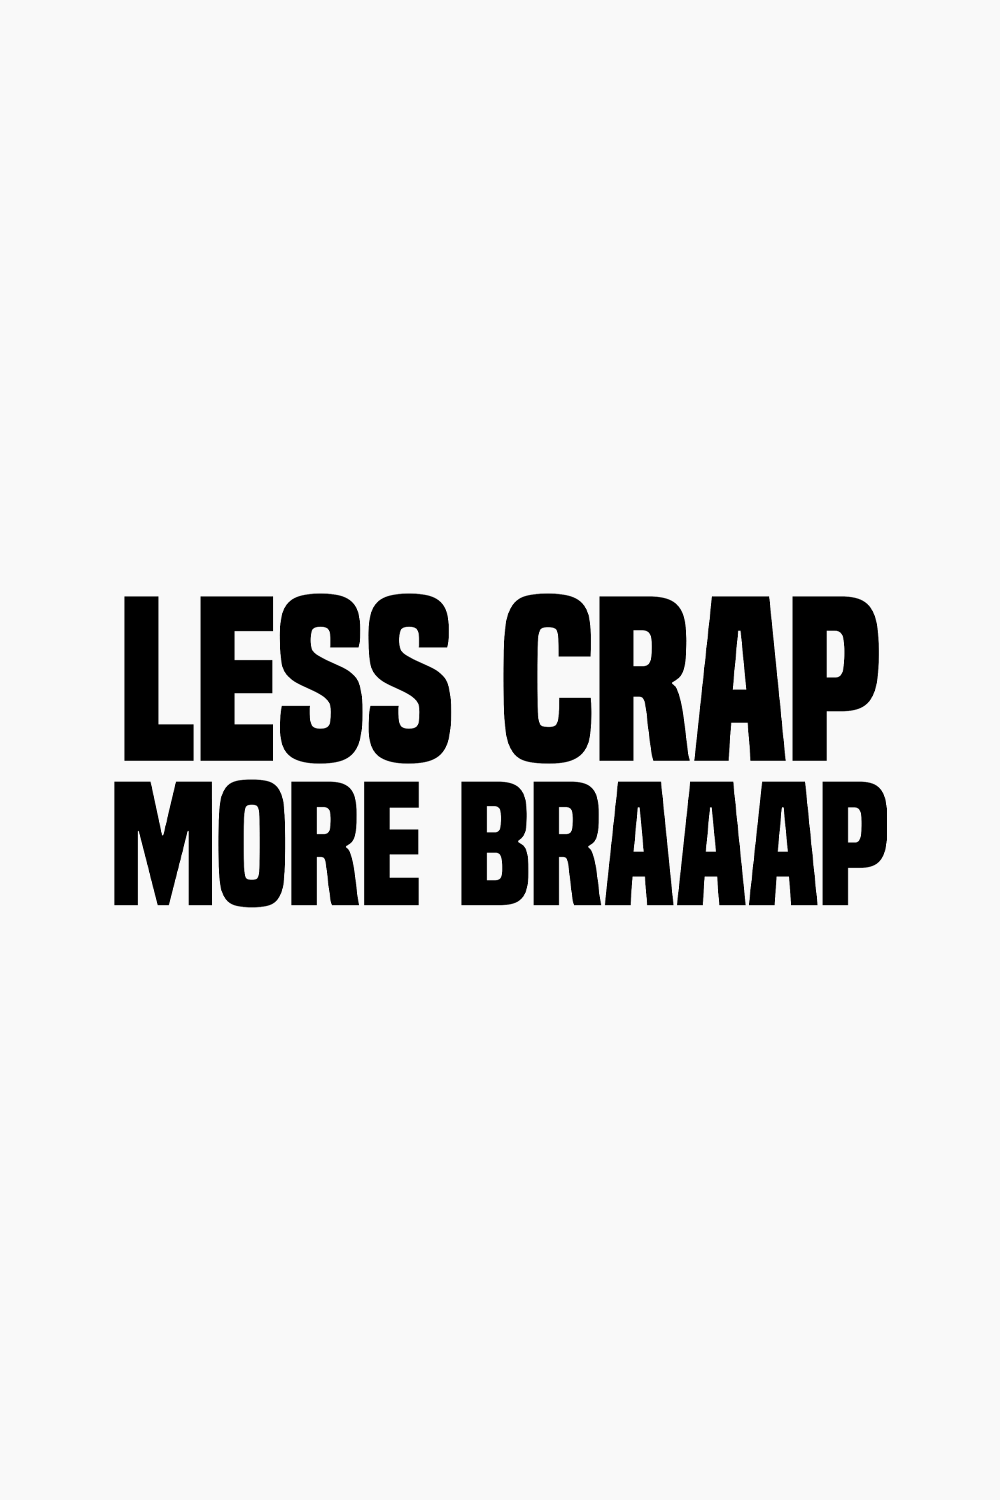 Less Crap More Braaap Decal